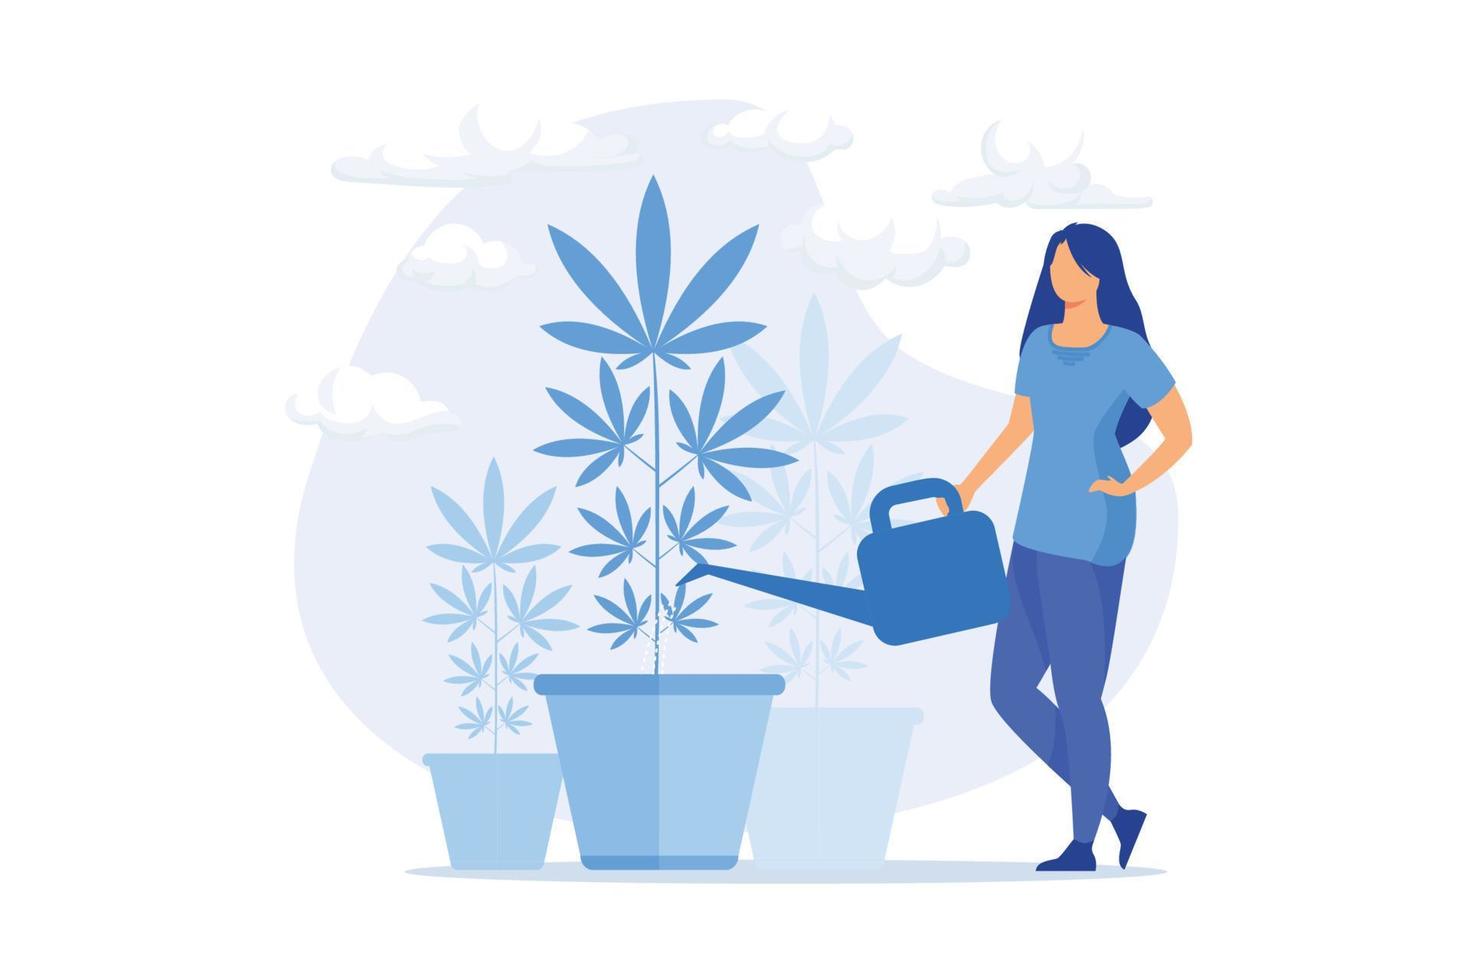 mujer joven regando la planta de cáñamo, planta de interior prohibida. cultivo de marihuana, cannabis medicinal, horticultura ilegal. niña cultivando hierba. ilustración moderna de vector plano